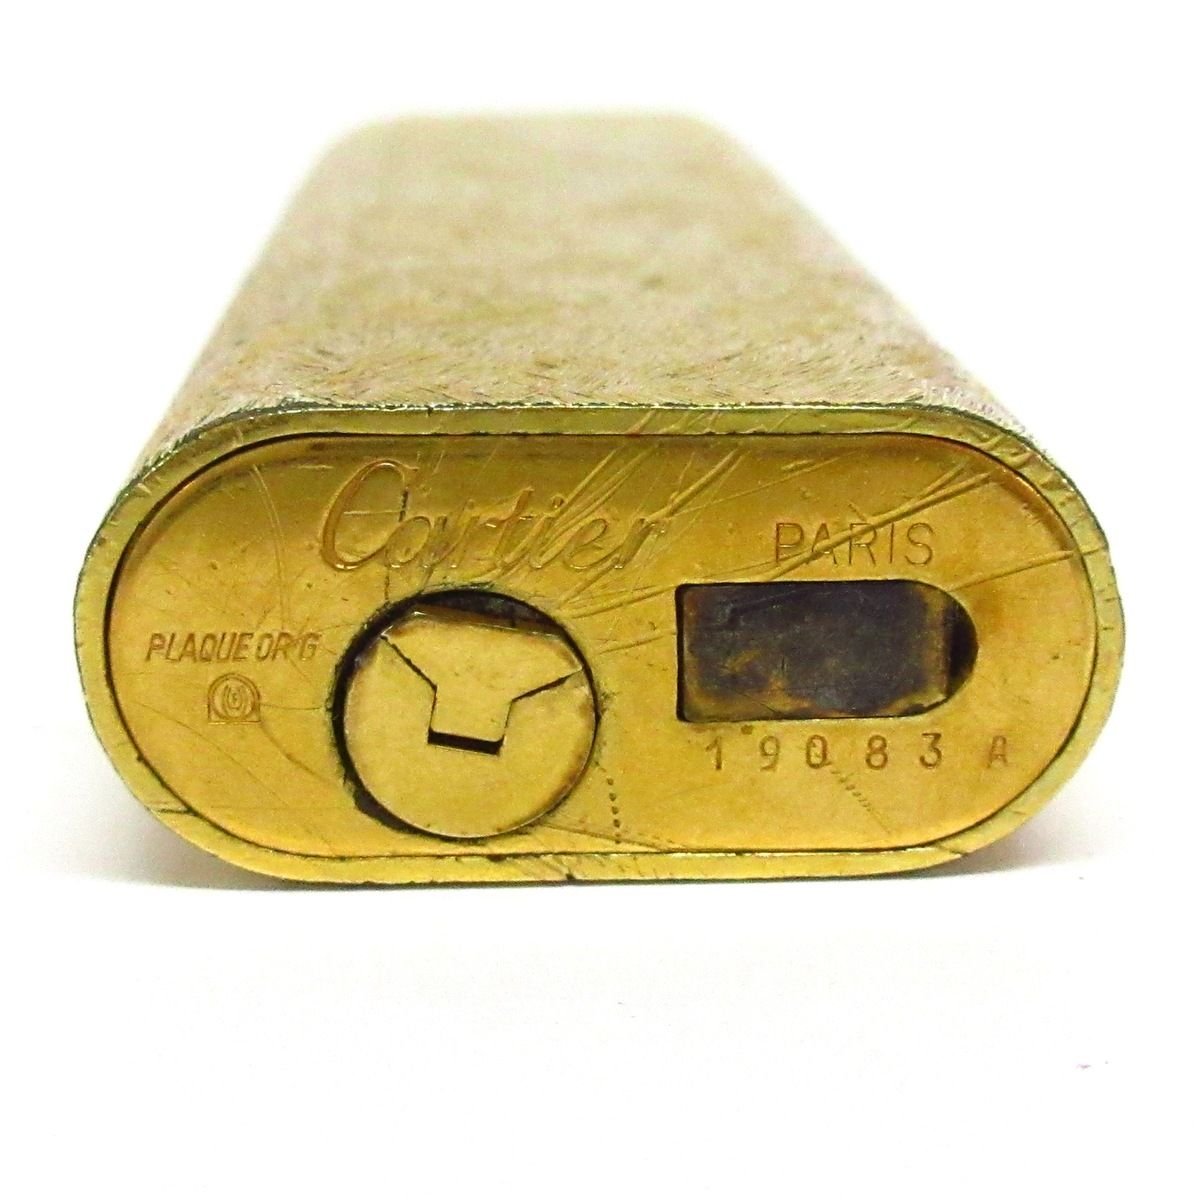 Cartier(カルティエ) ライター - ゴールド 着火確認できず 金属素材 